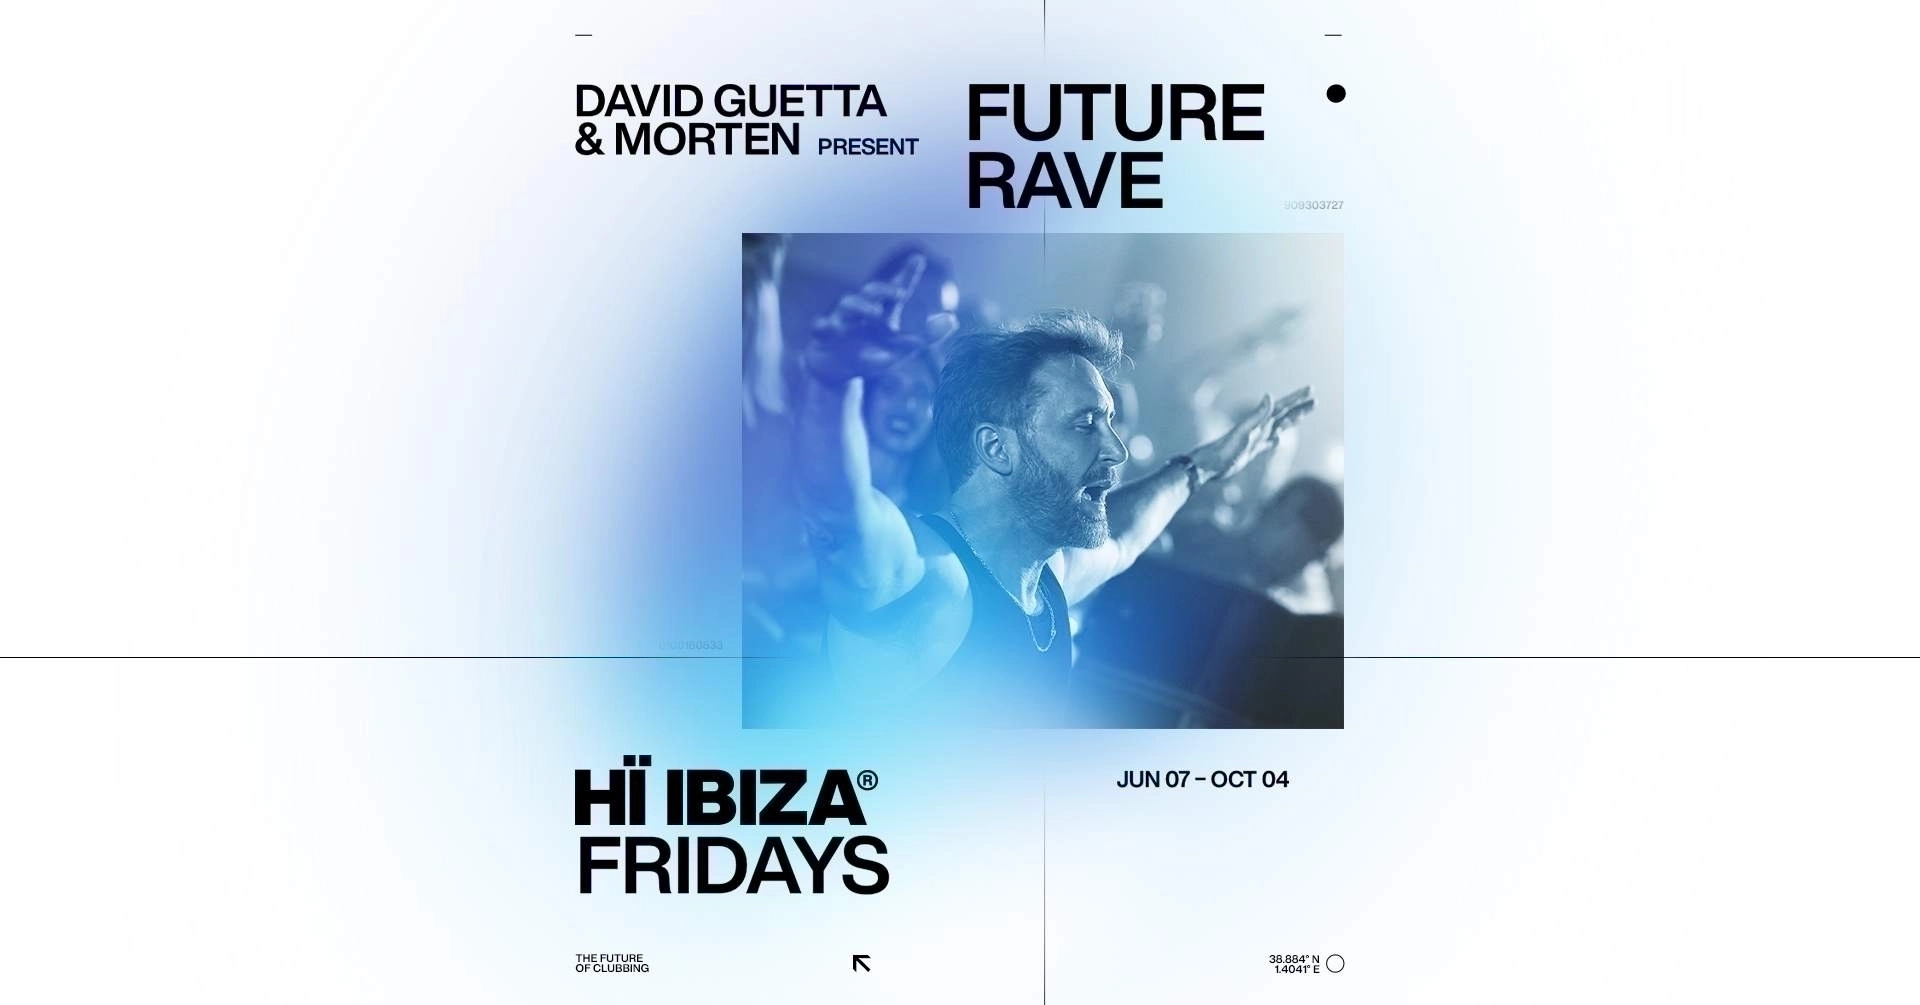 David Guetta - Morten Present Future Rave at Hï Ibiza Tickets